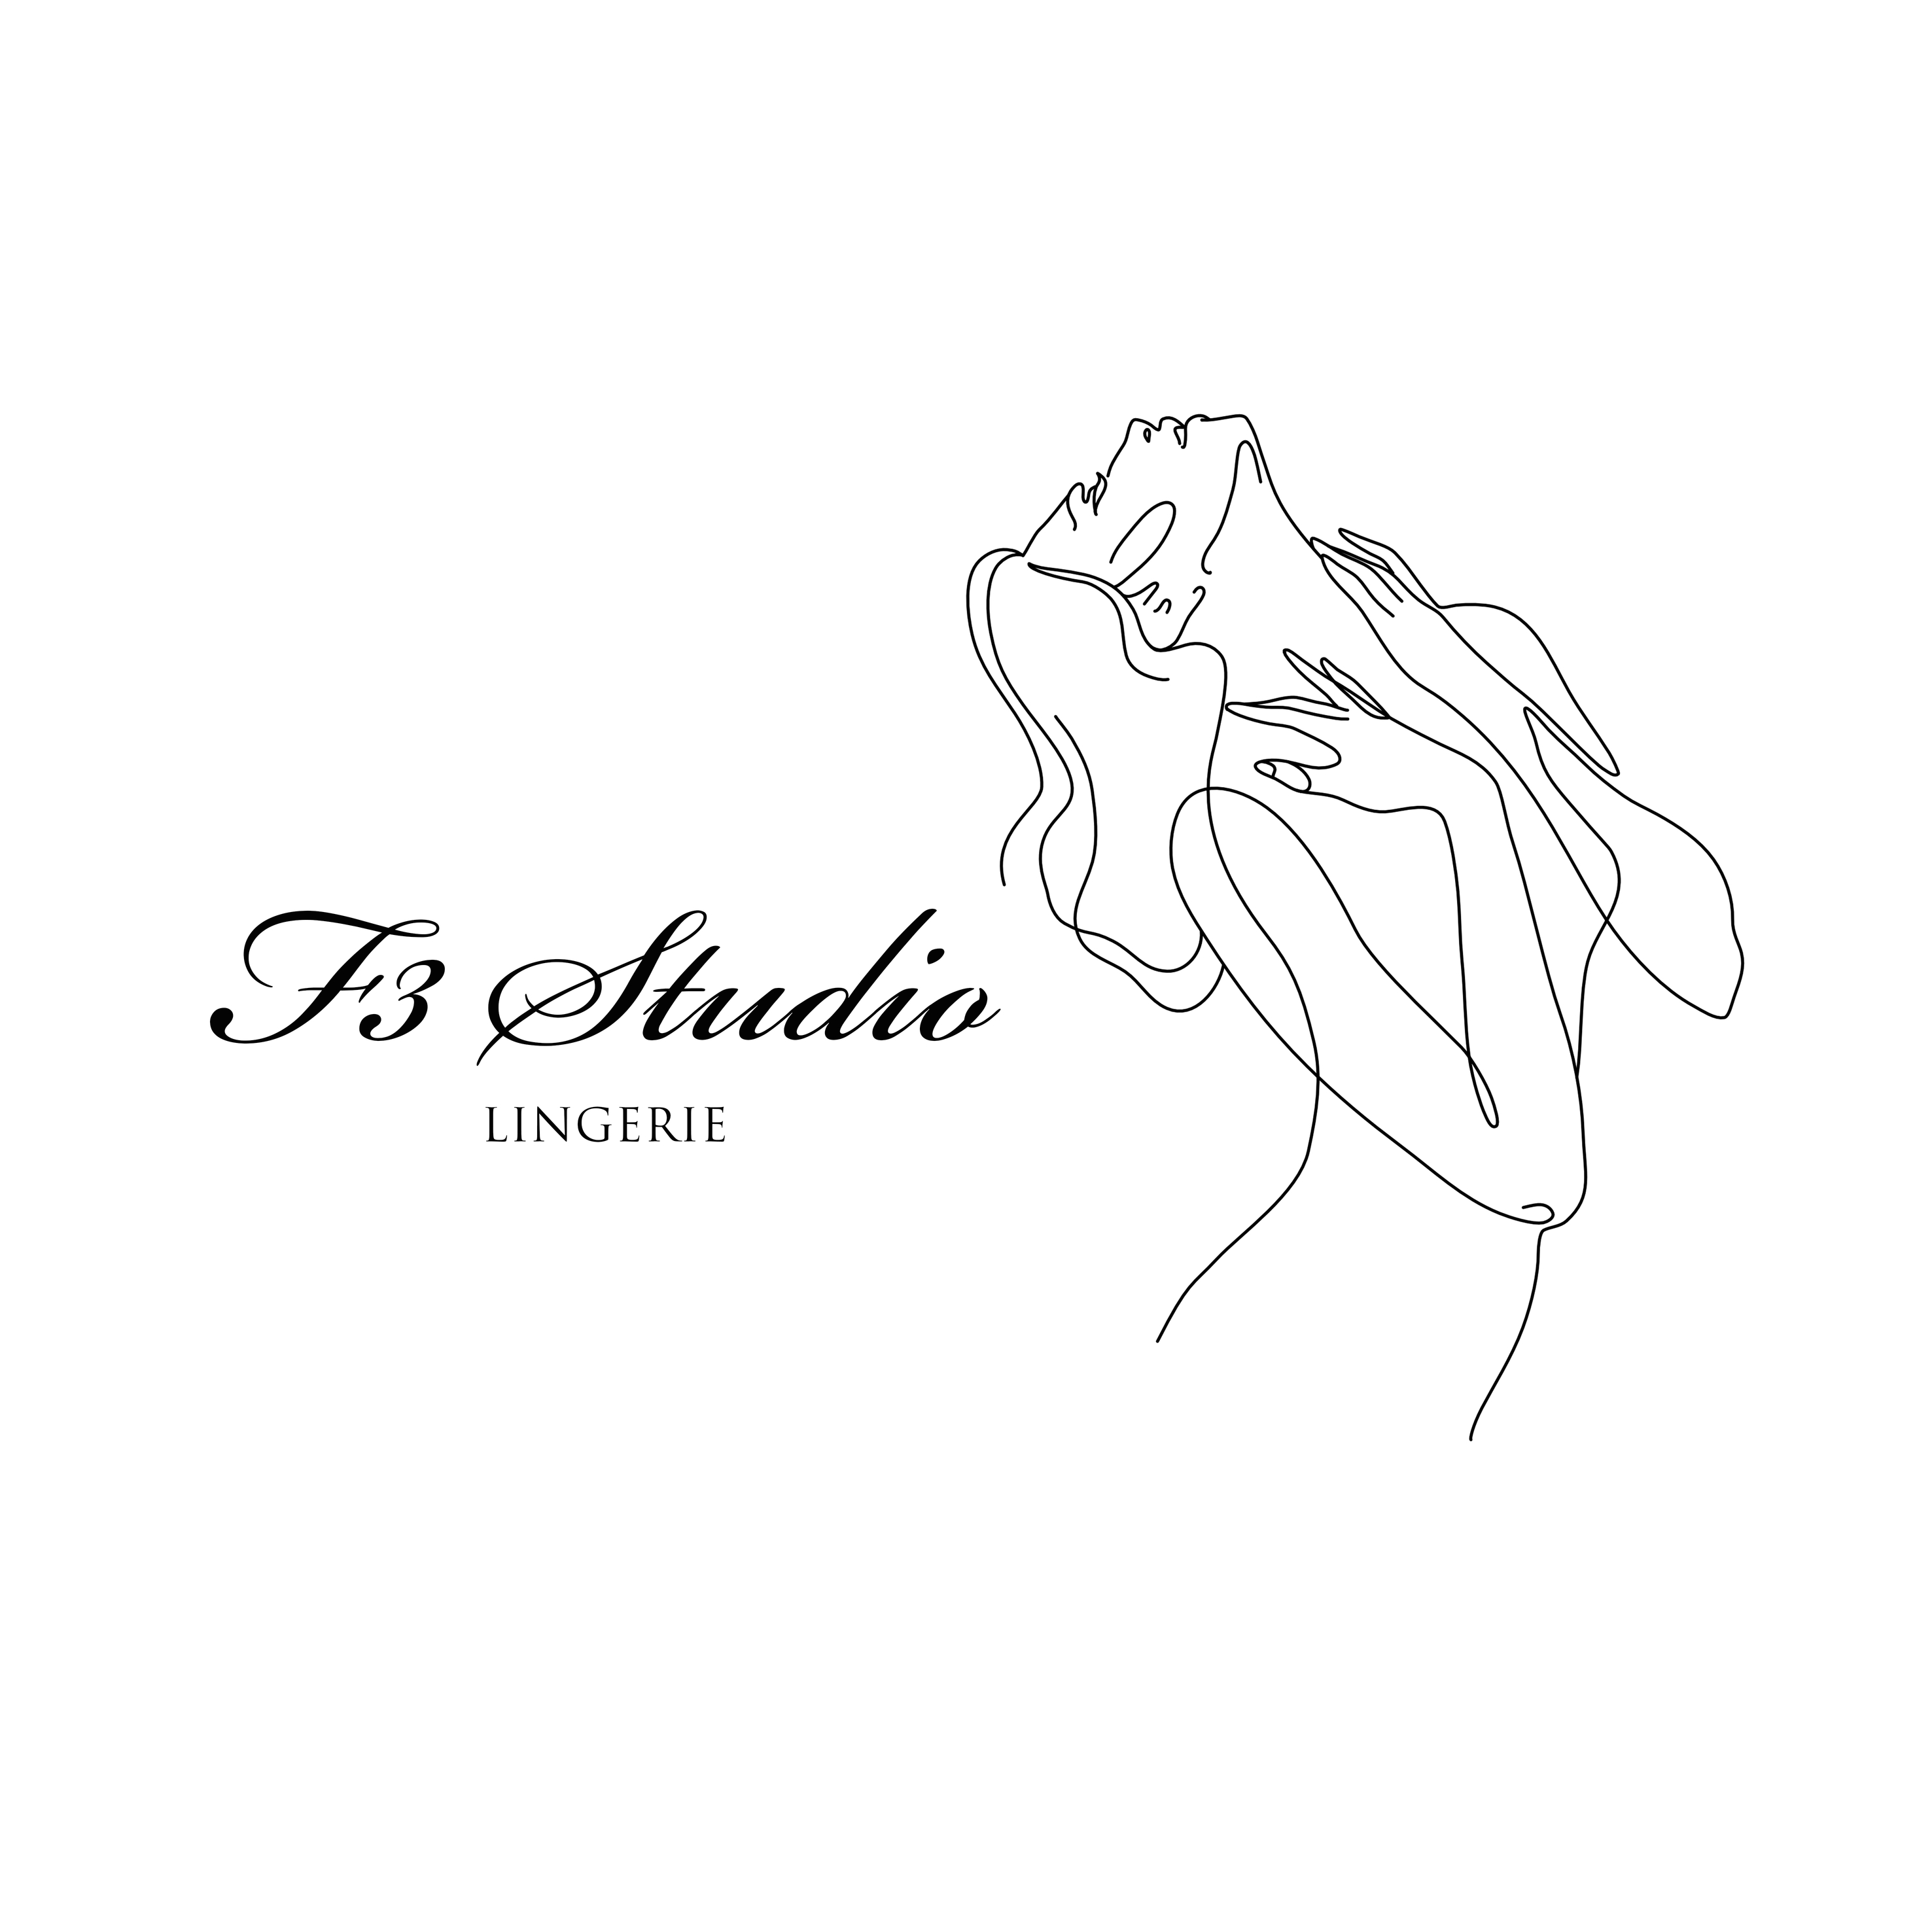 F3 studio